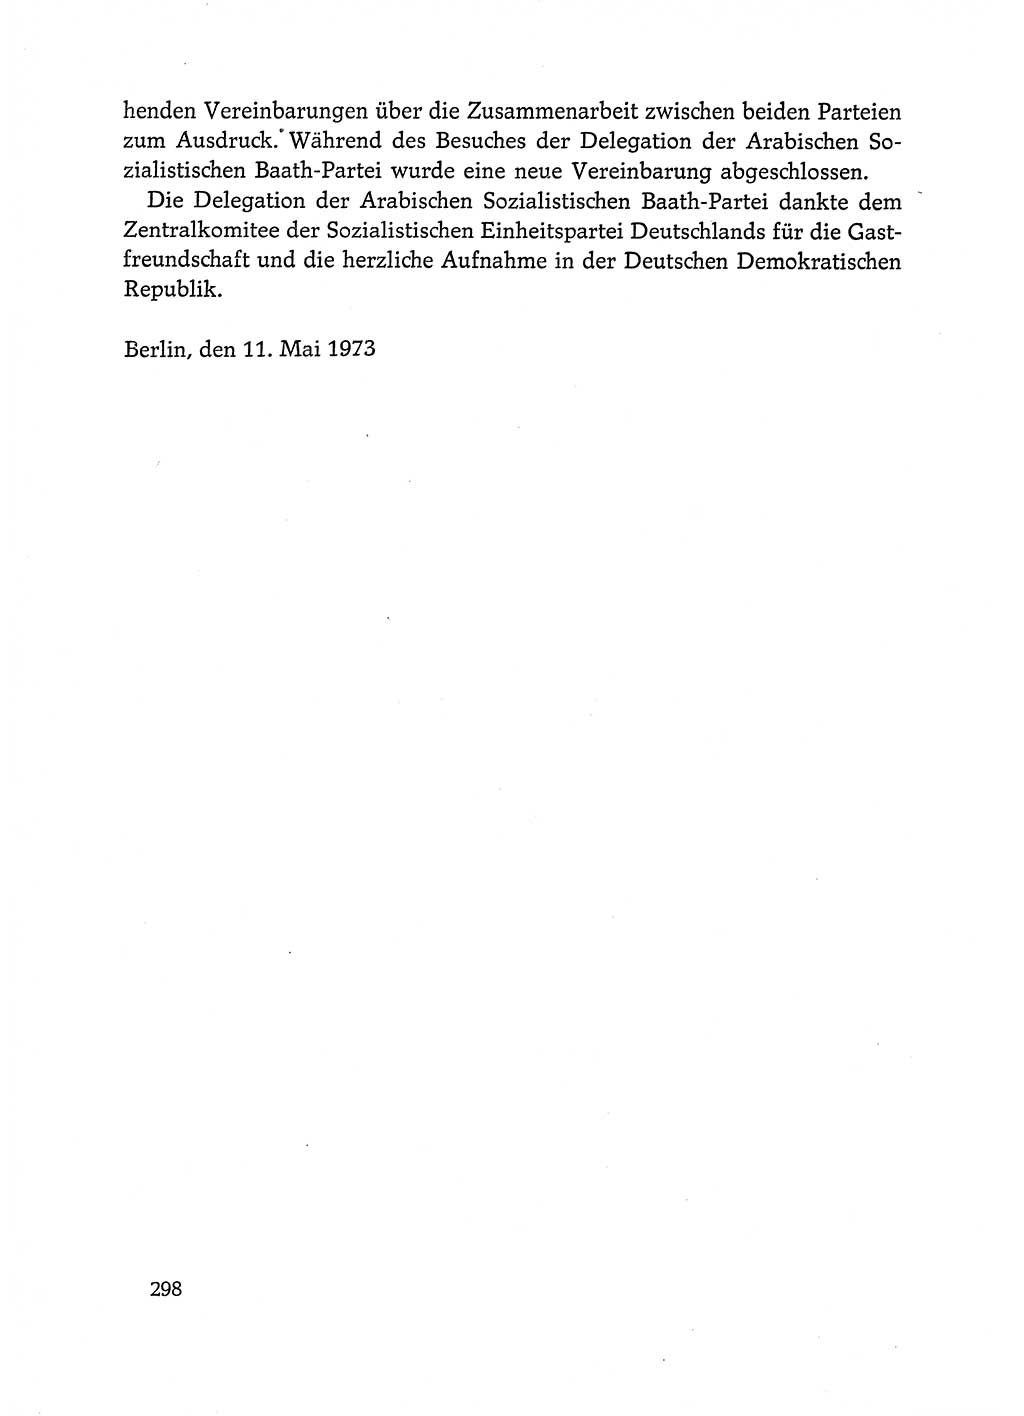 Dokumente der Sozialistischen Einheitspartei Deutschlands (SED) [Deutsche Demokratische Republik (DDR)] 1972-1973, Seite 298 (Dok. SED DDR 1972-1973, S. 298)